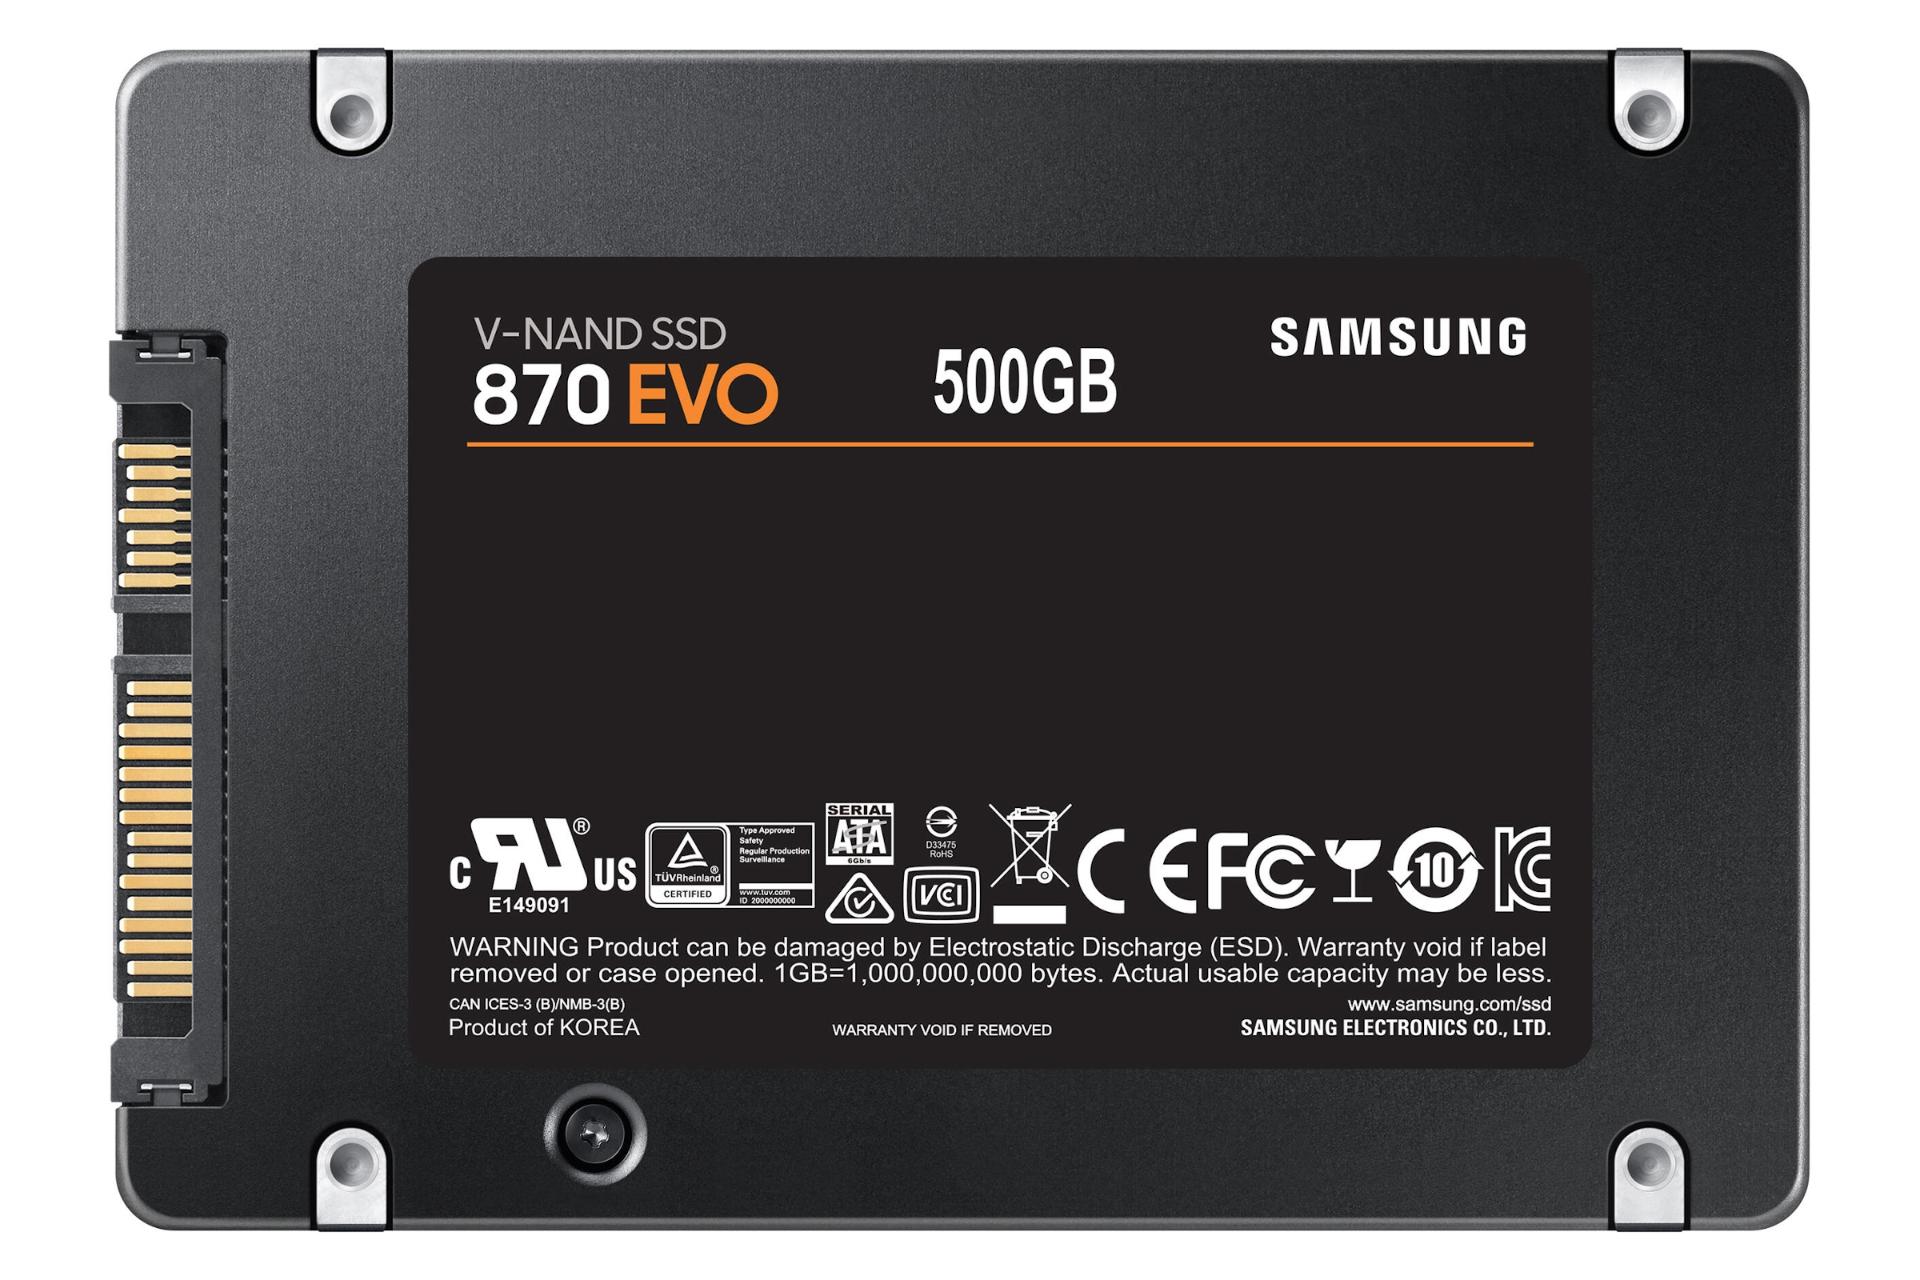 مرجع متخصصين ايران SSD سامسونگ Samsung 870 EVO SATA 2.5 Inch 500GB ظرفيت 500 گيگابايت